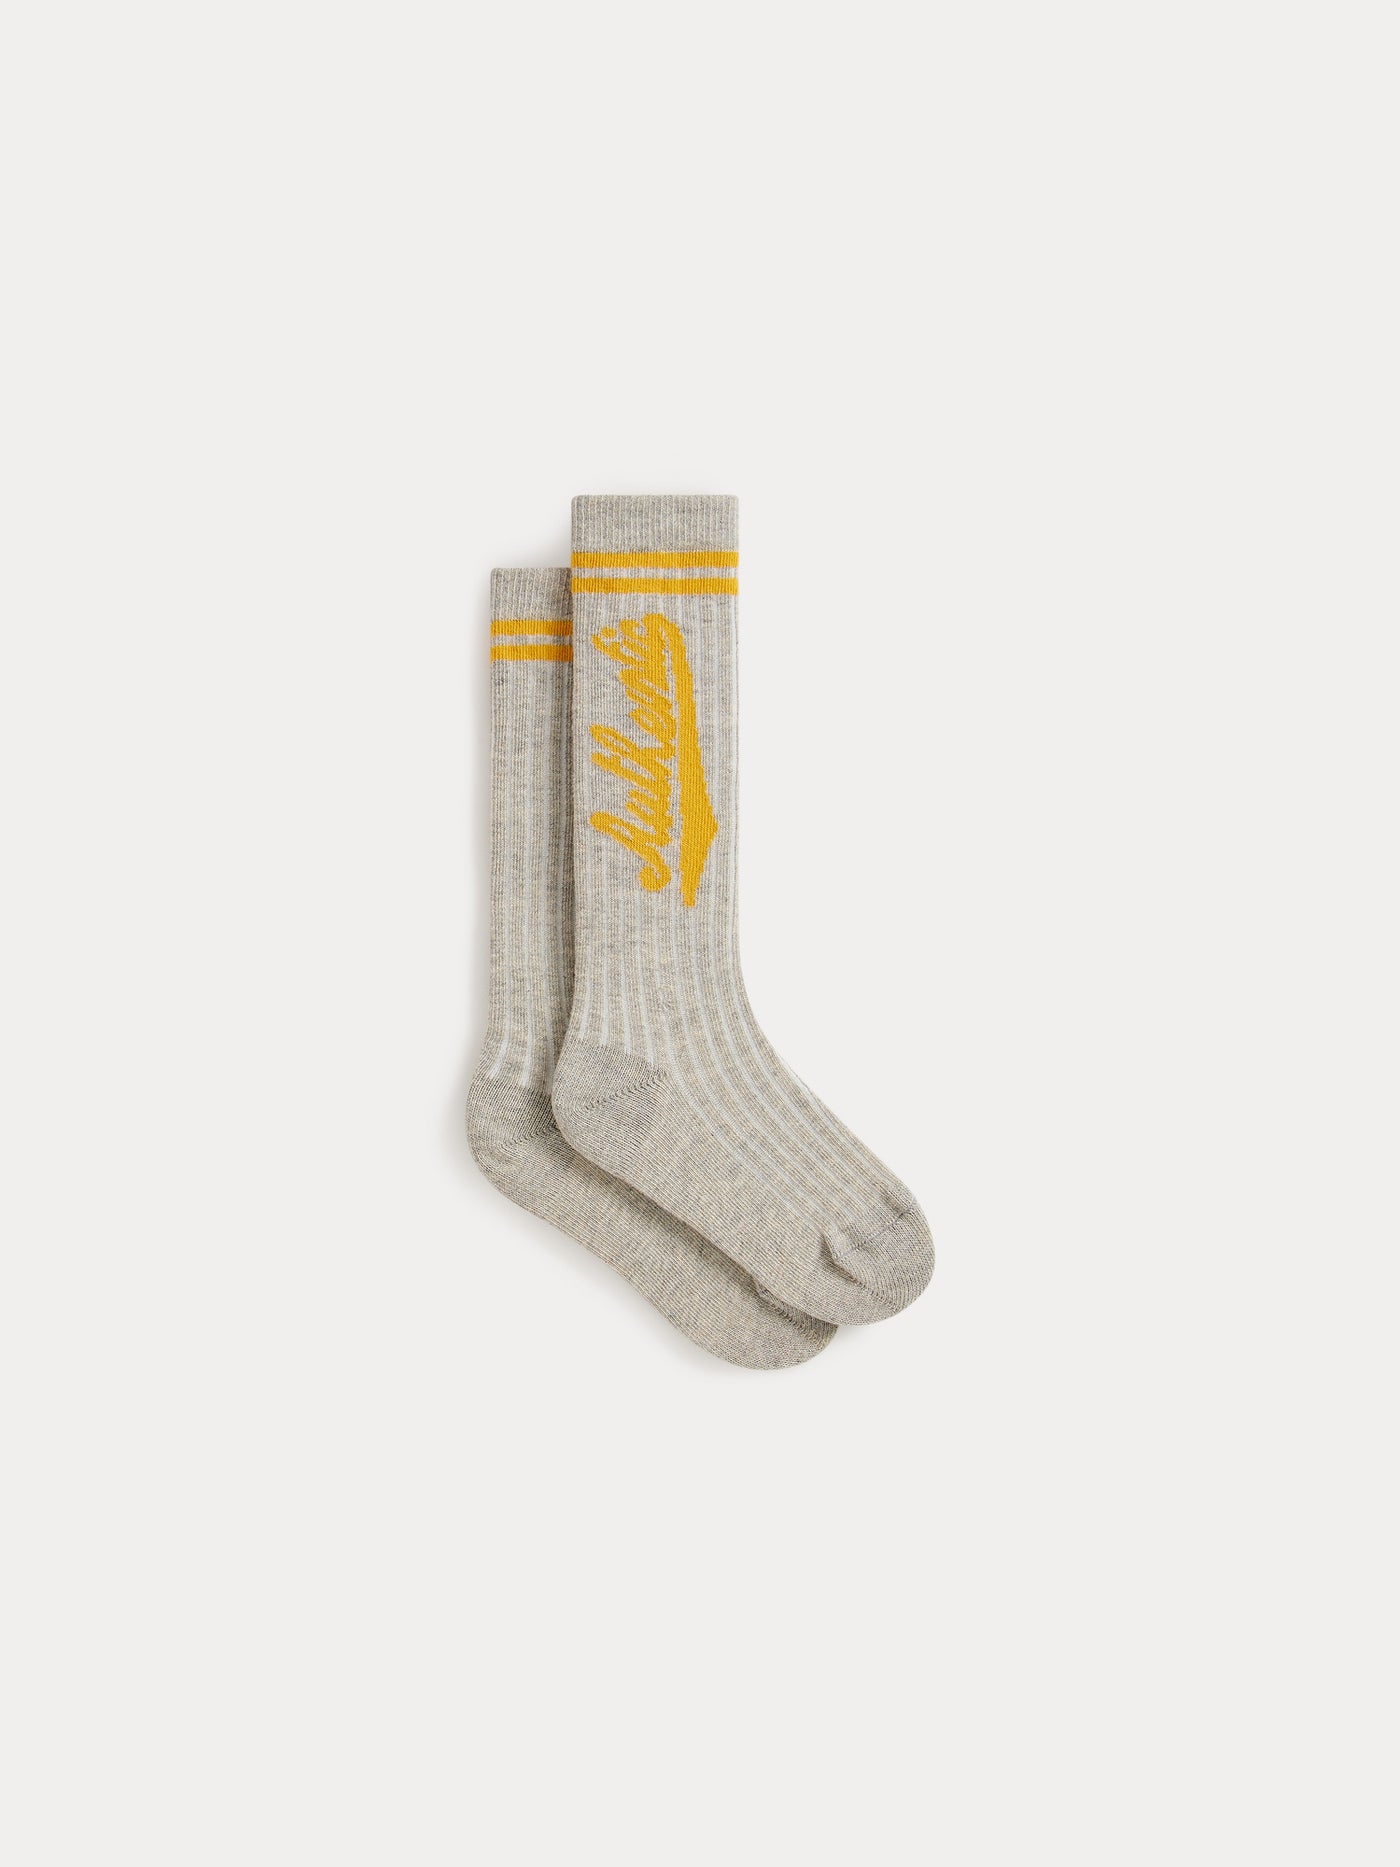 Doby Socks heathered gray